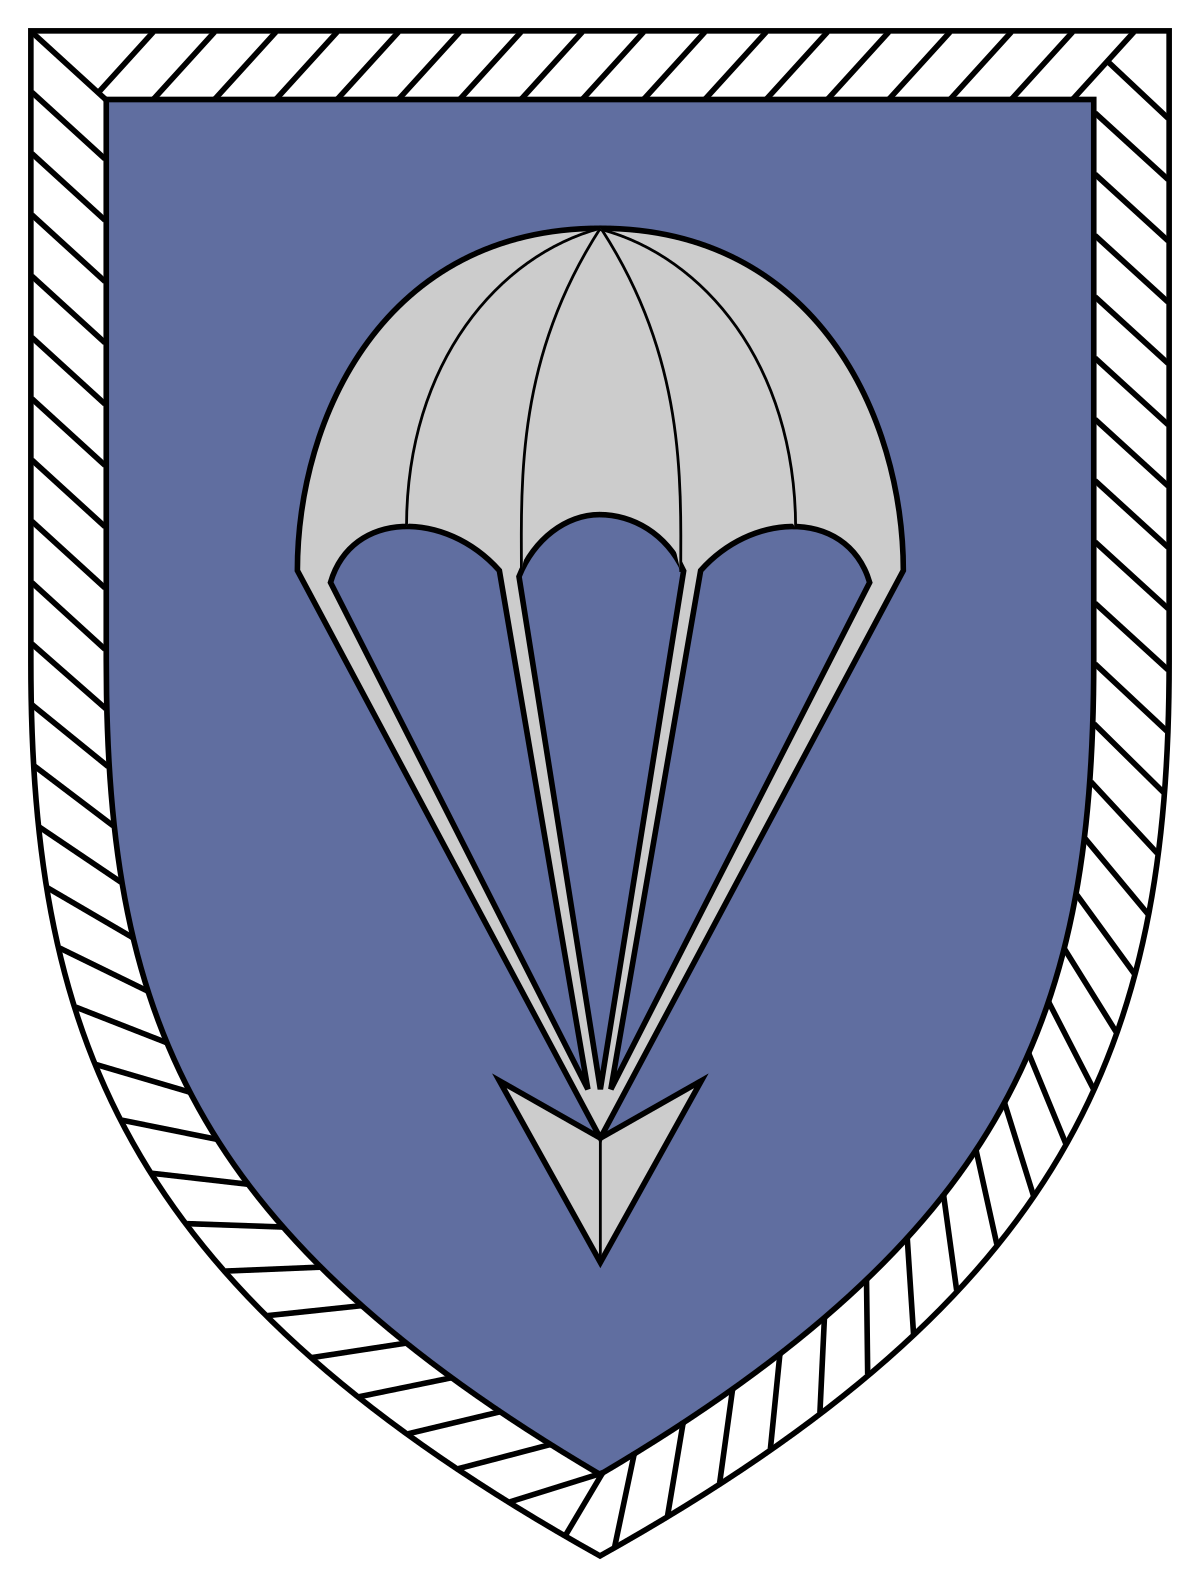 第1空挺師団 (ドイツ連邦陸軍) - Wikipedia